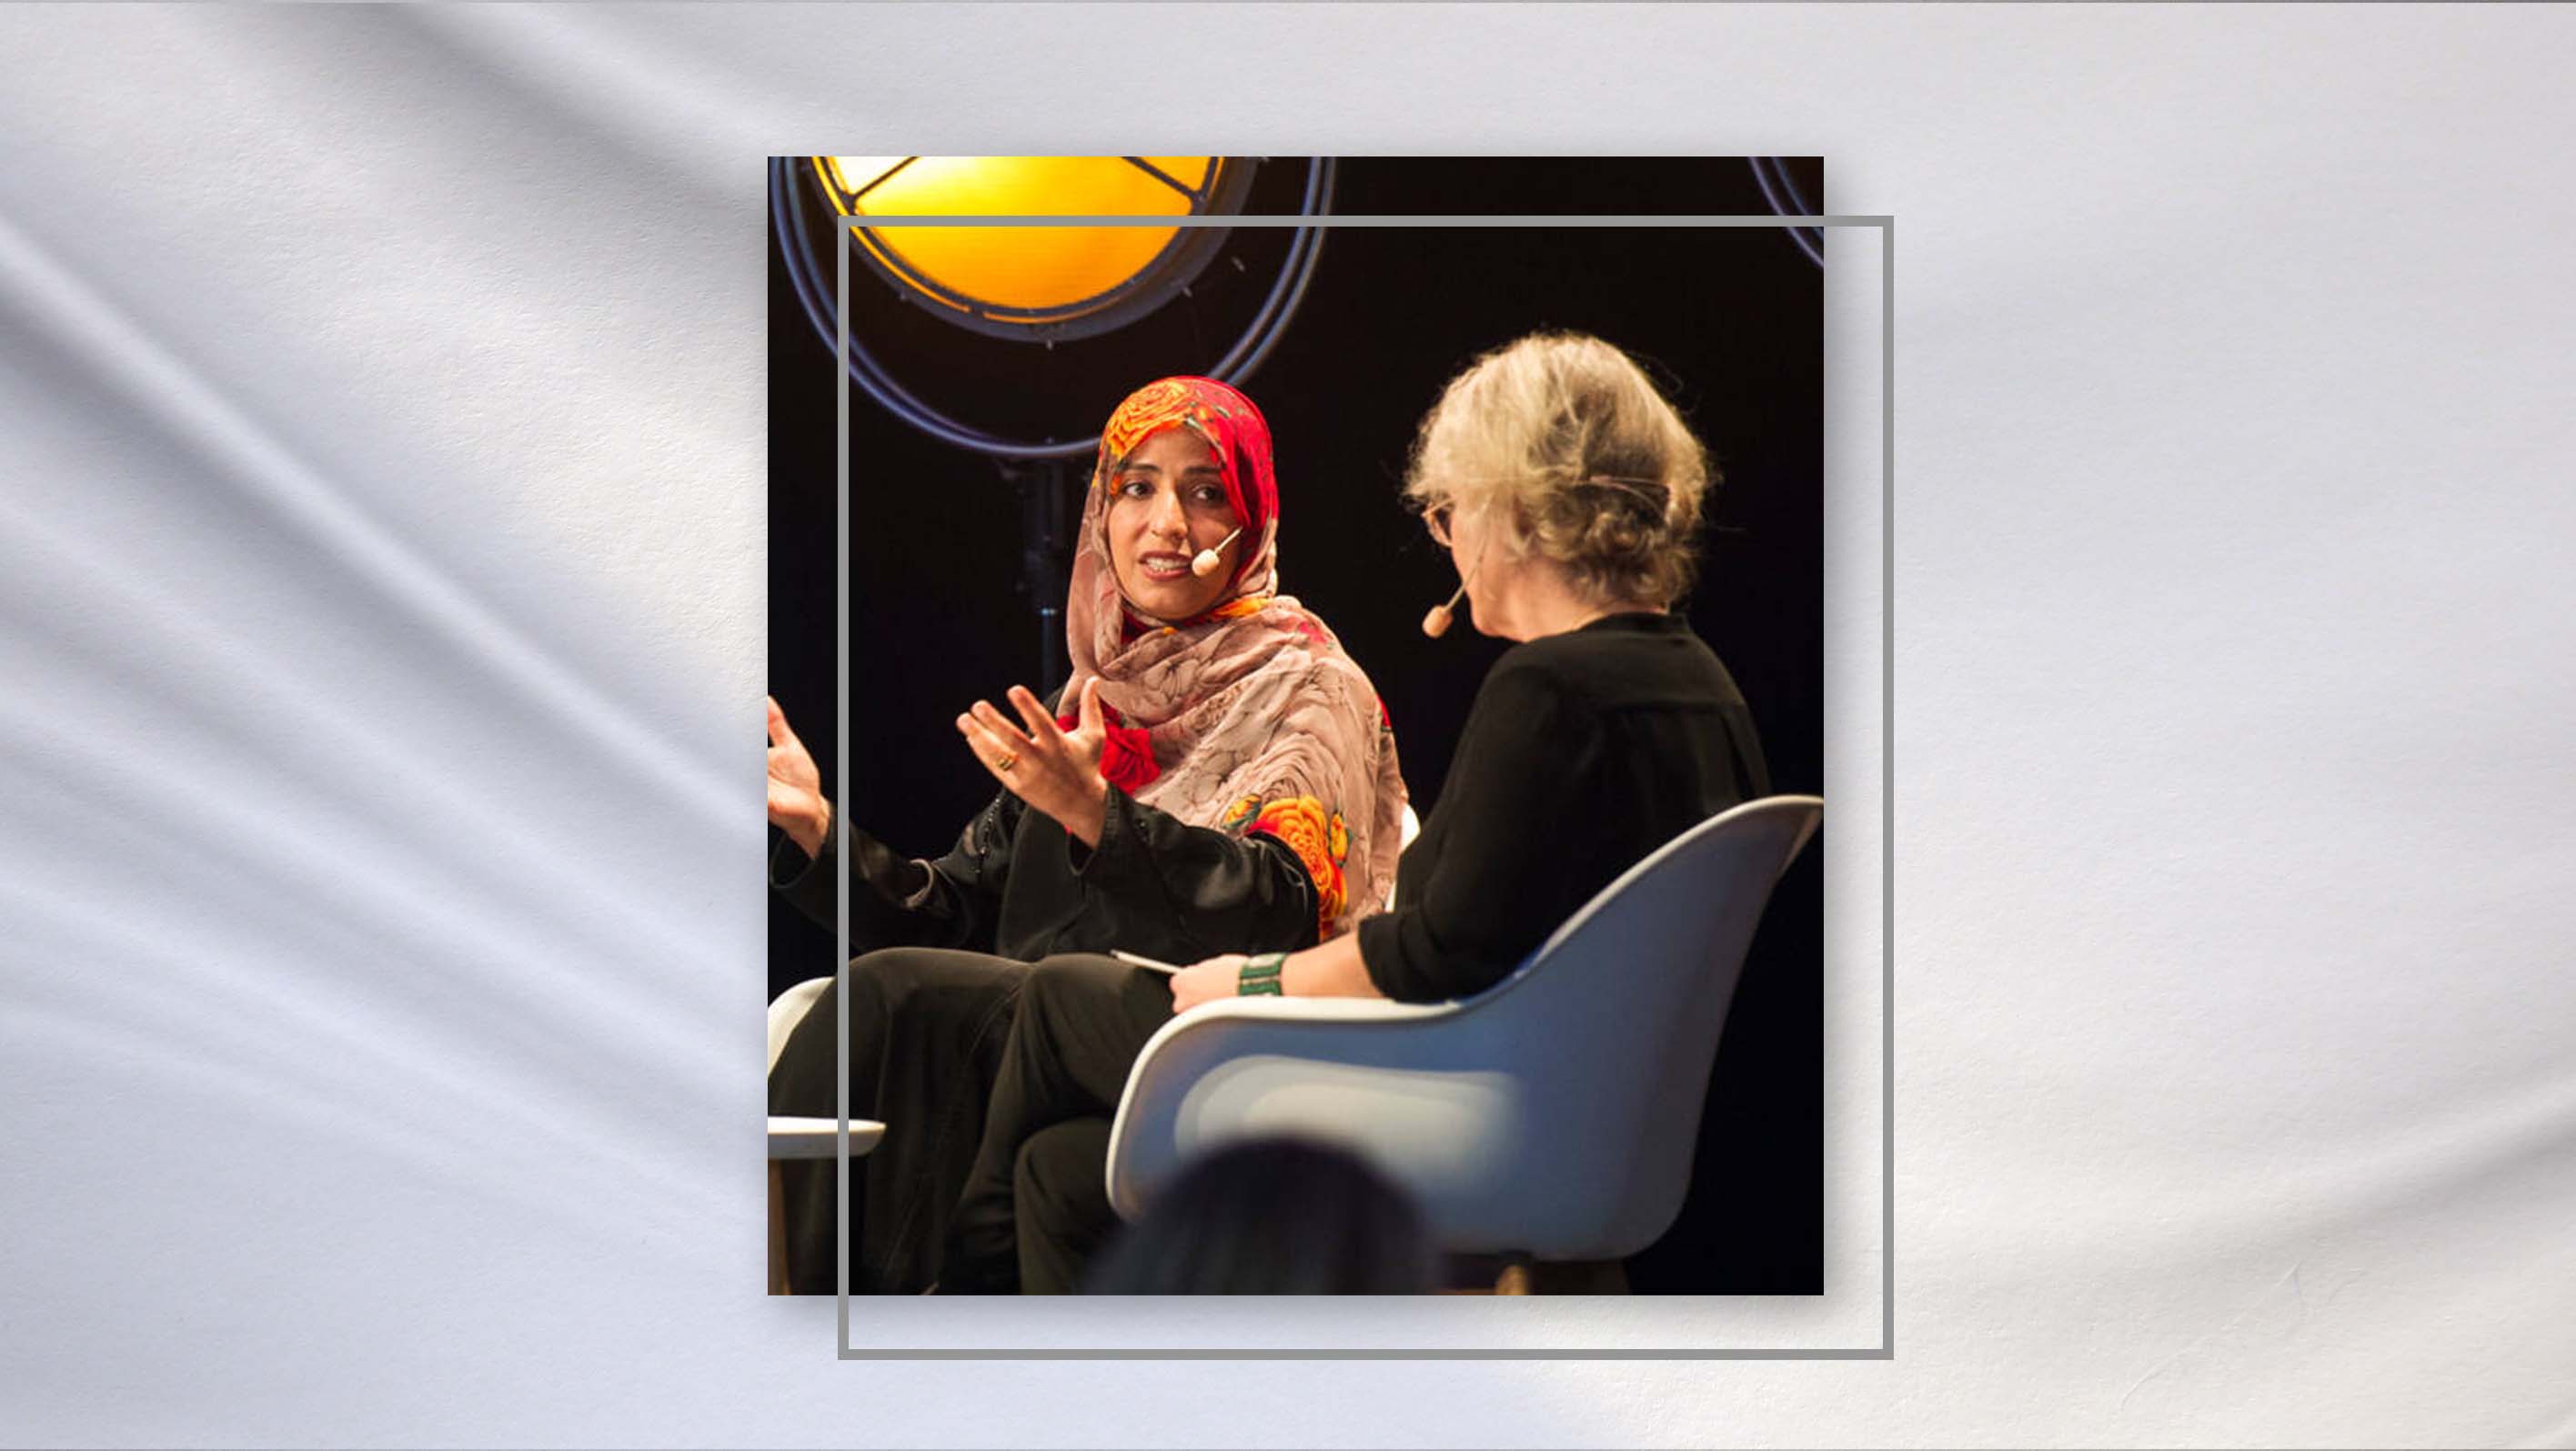 حديث توكل كرمان في قمة نوبل للمعلم - السويد